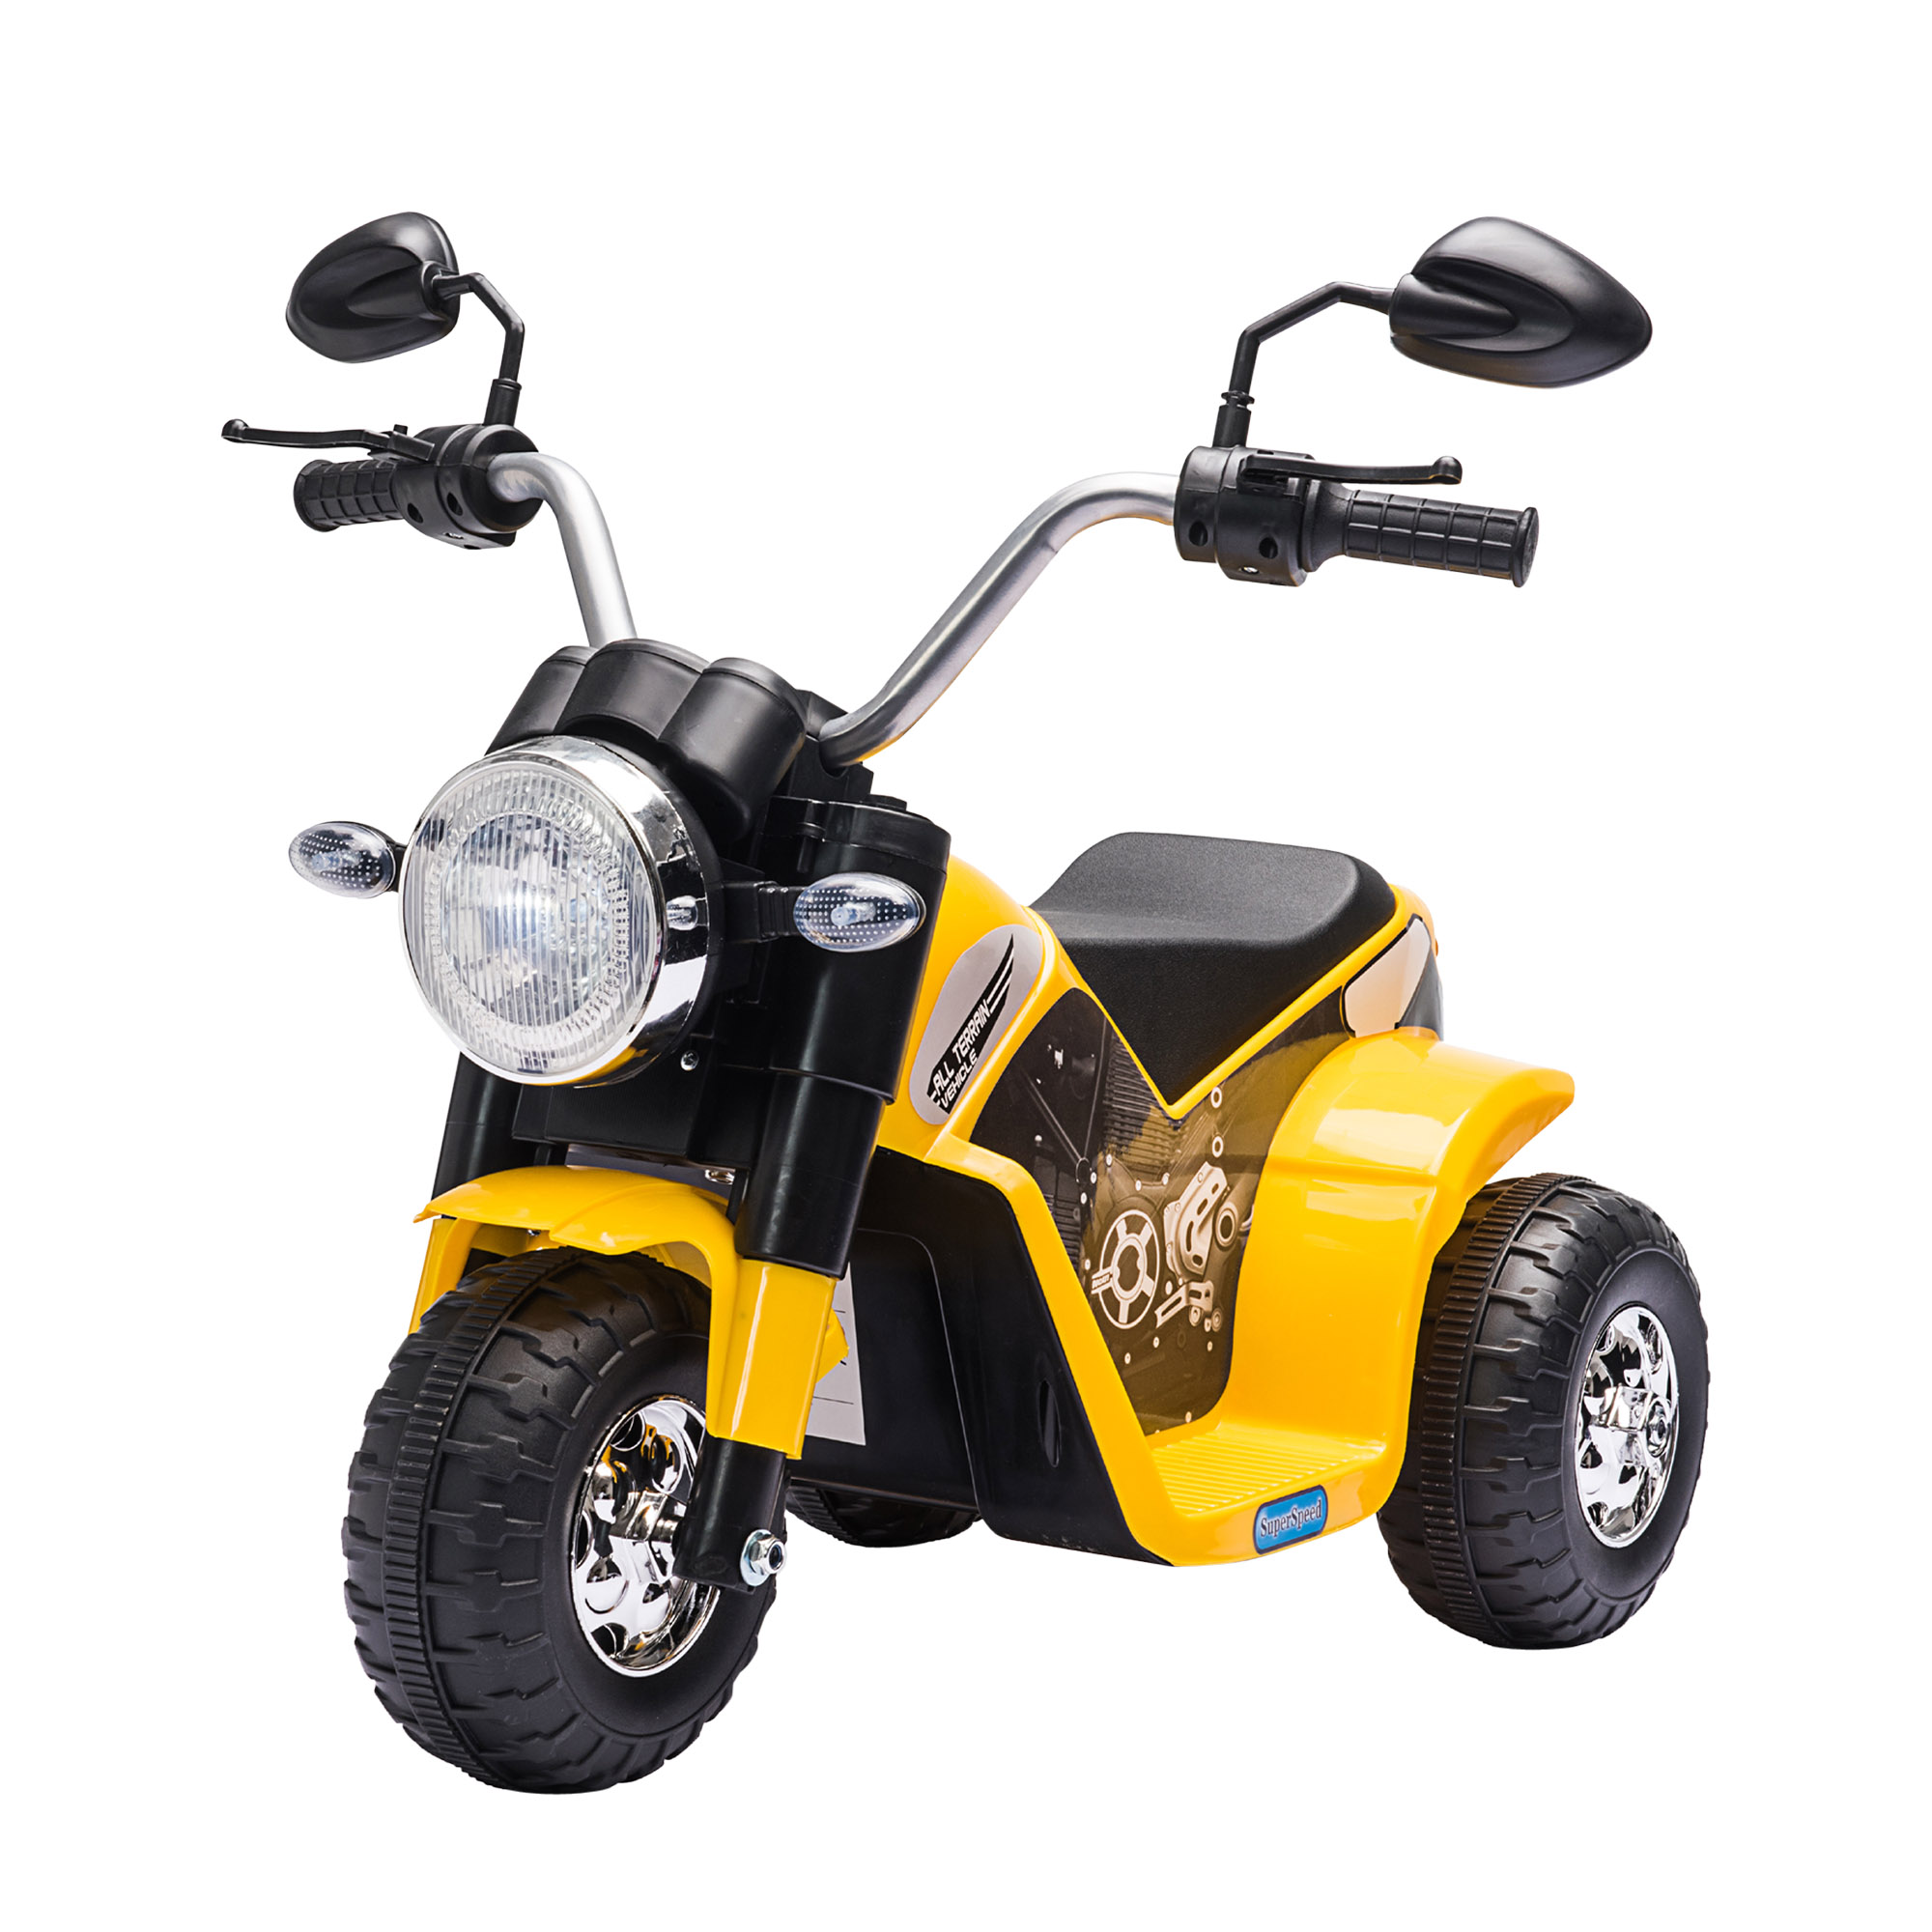 Homcom - HOMCOM Moto Eléctrica Infantil con 3 Ruedas Triciclo a Batería 6V para Niños de 18-36 Meses con Faro Bocina Velocidad 2 km/h 72x57x56 cm